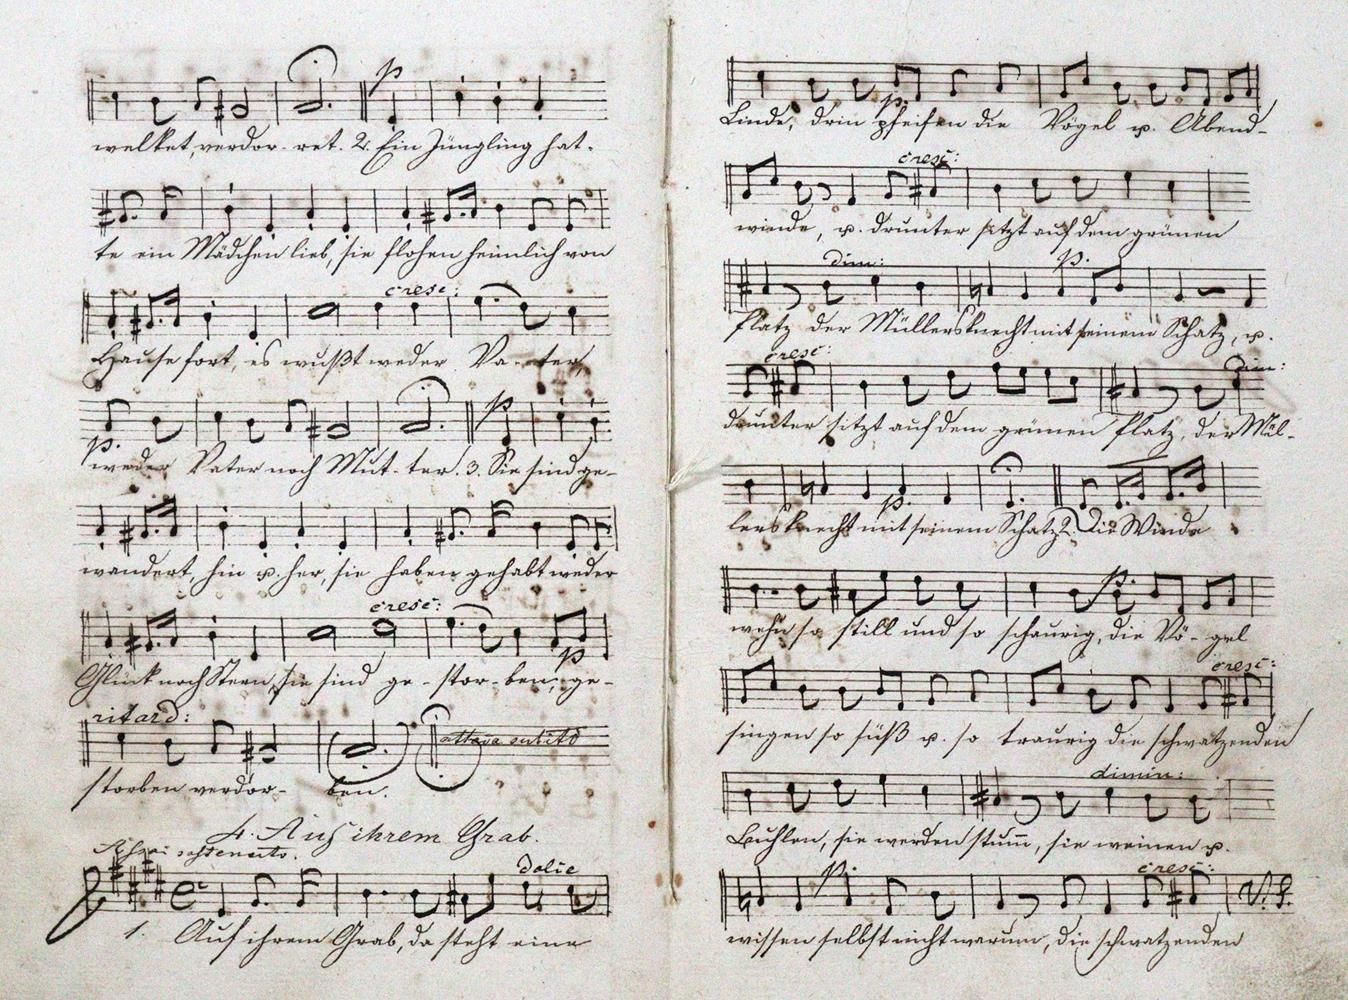 Papst,W. Canzoni per soprano, contralto, tenore e basso, composte da Felix Mende&hellip;